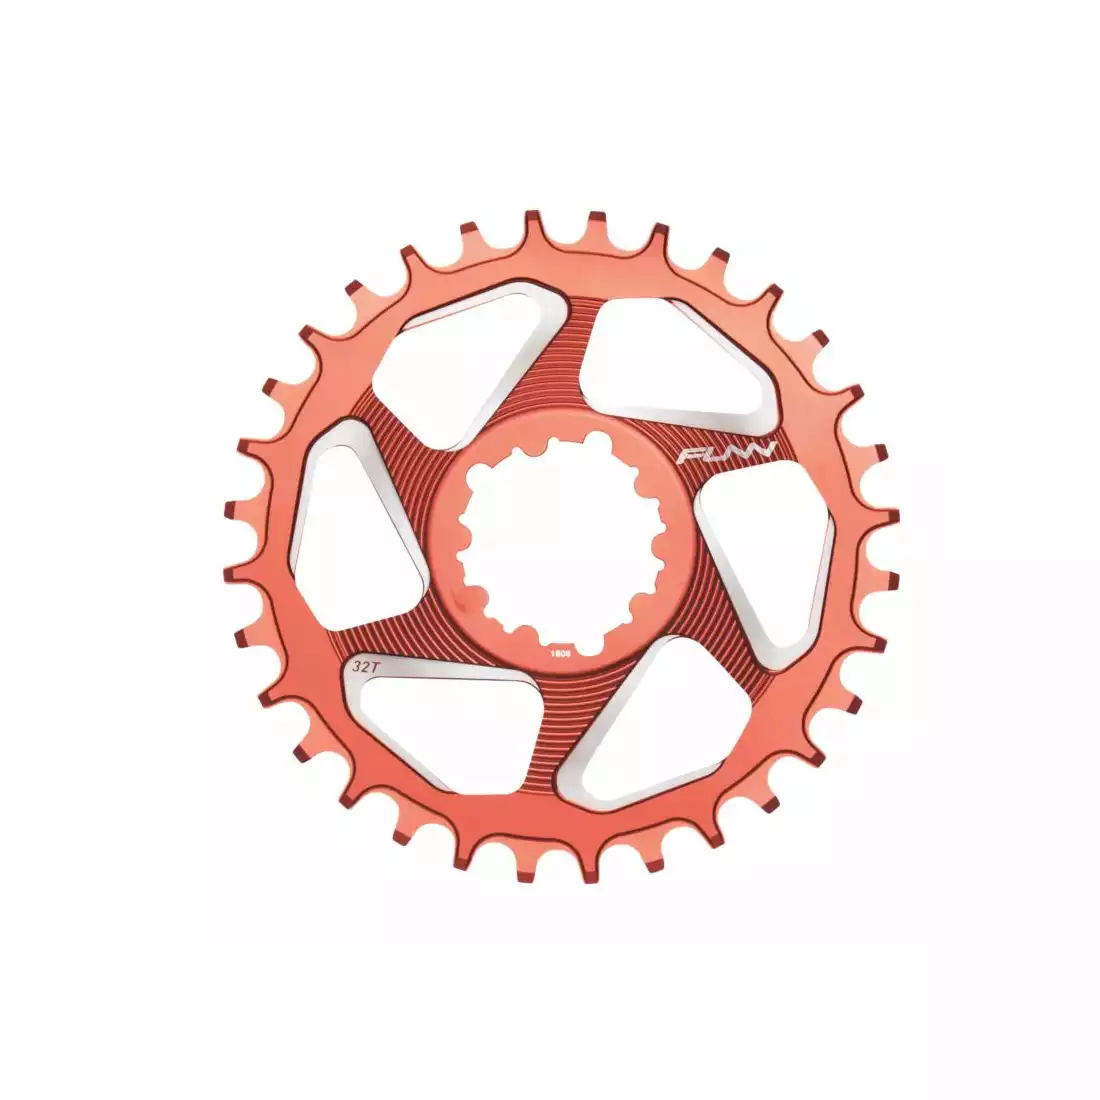 FUNN SOLO DX 32T NARROW- WIDE pinionul bicicletei la manivelă roșu